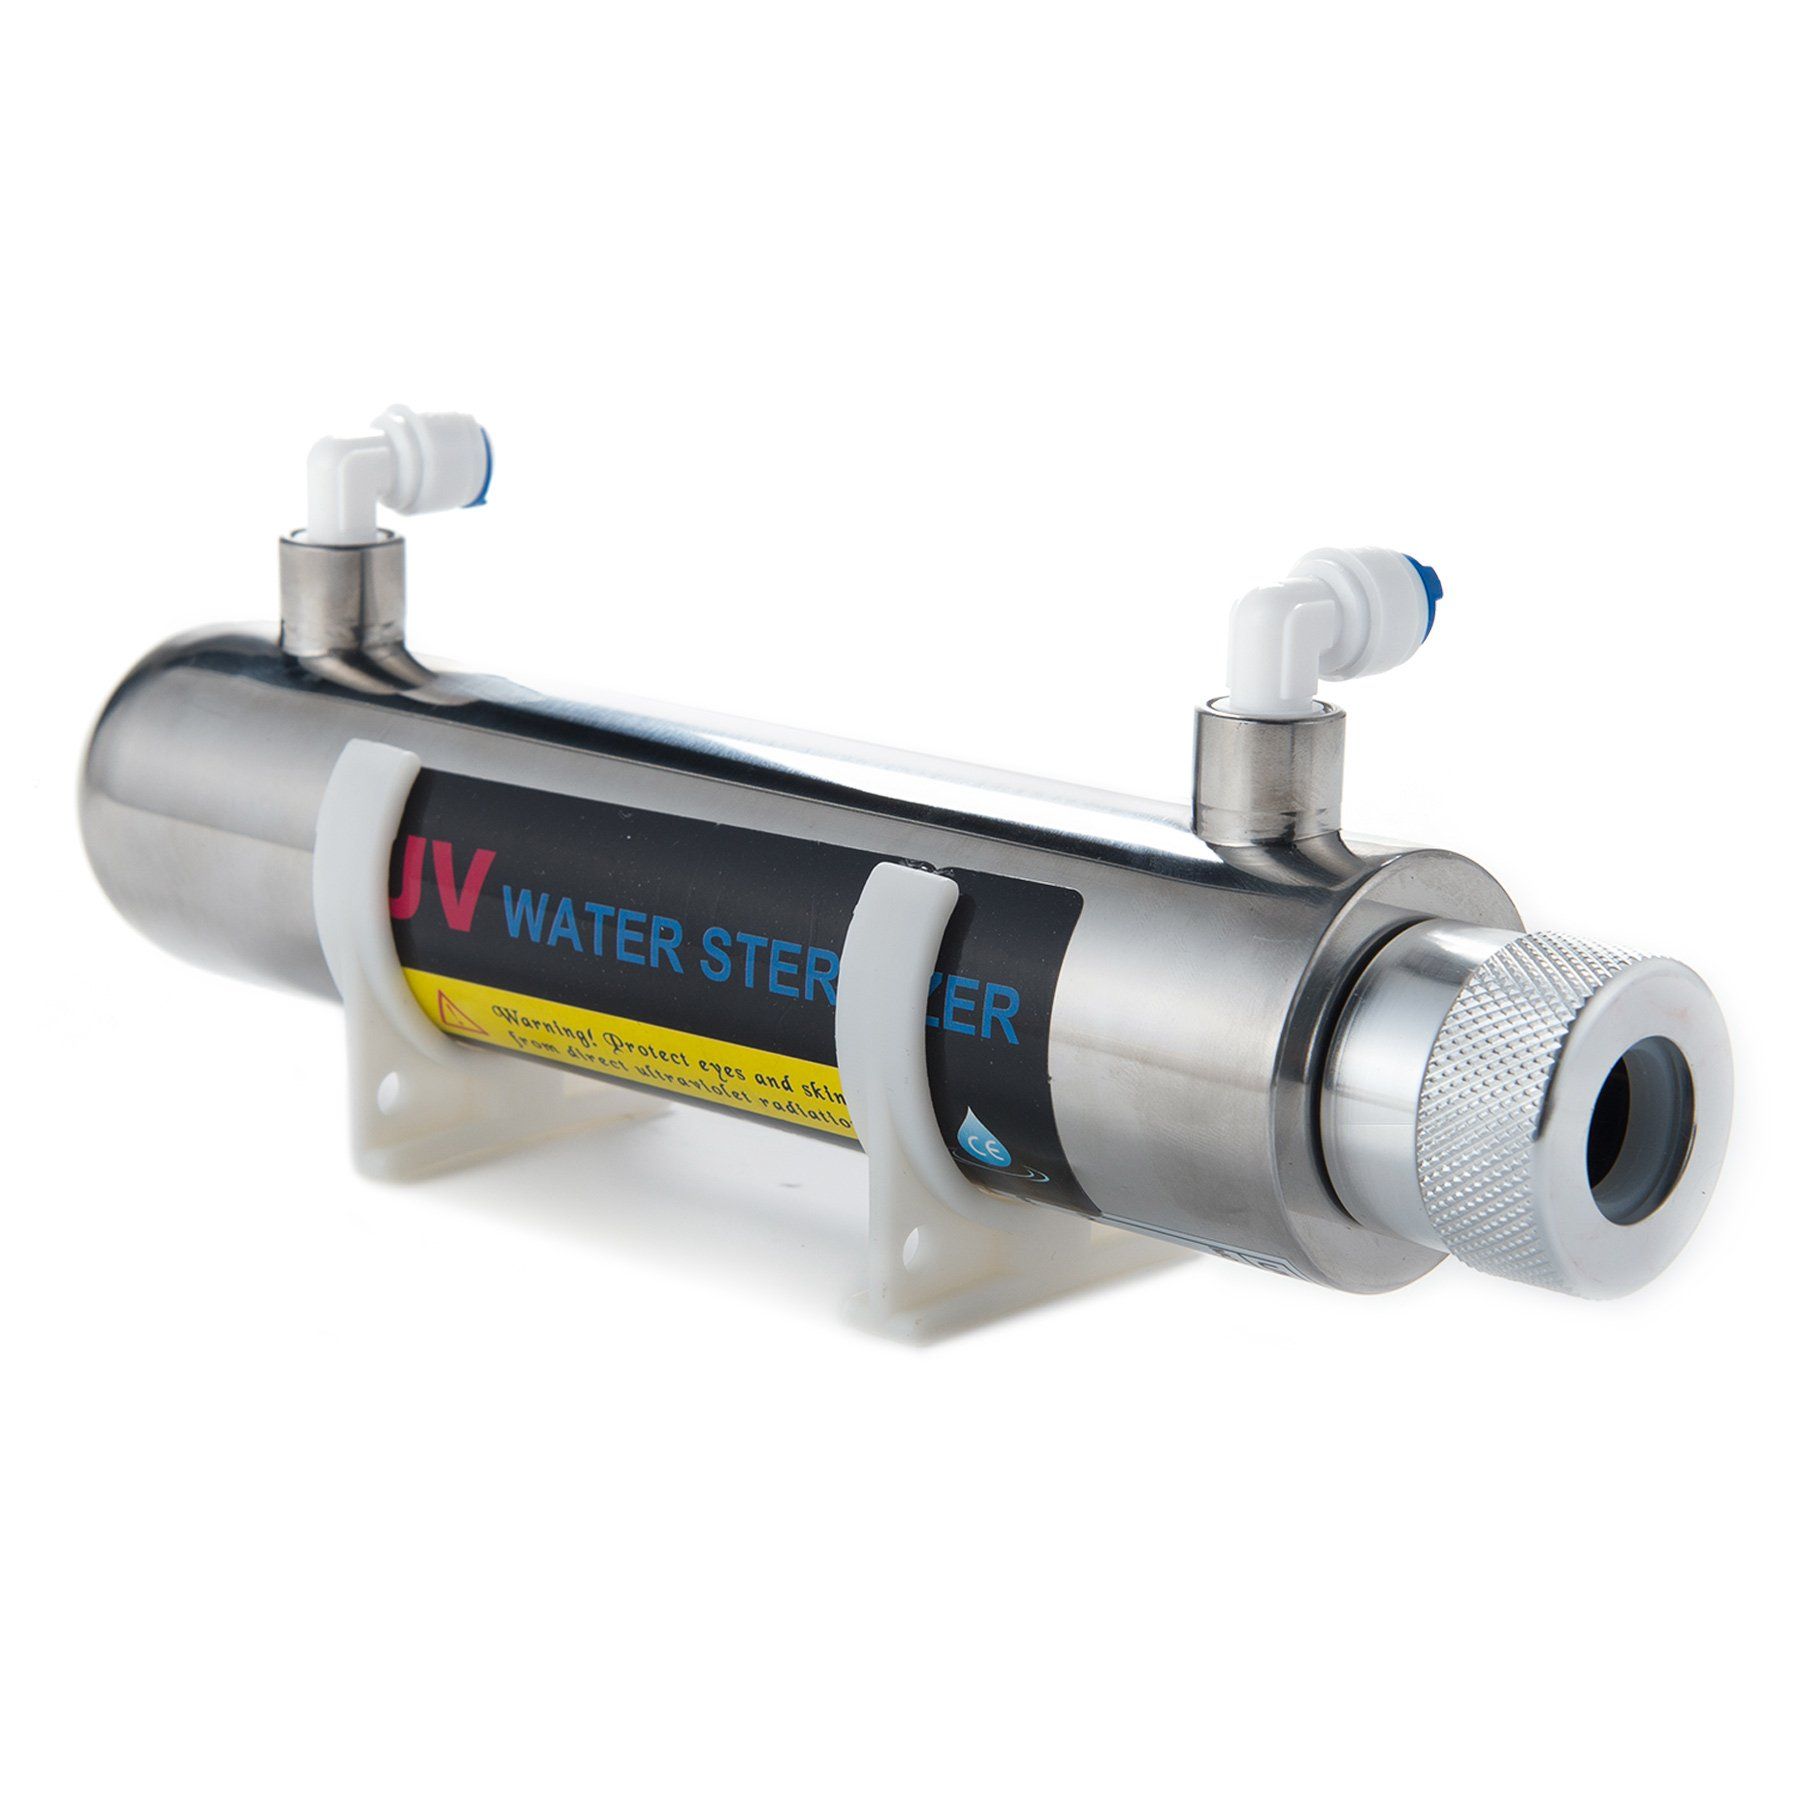 Уф стерилизатор uv. Ультрафиолетовый стерилизатор воды uv240. УФ стерилизатор воды AQUAPRO UV-6gpm-h 1". Uv505 Water Sterilizer. UV Water Sterilizer 2400w.